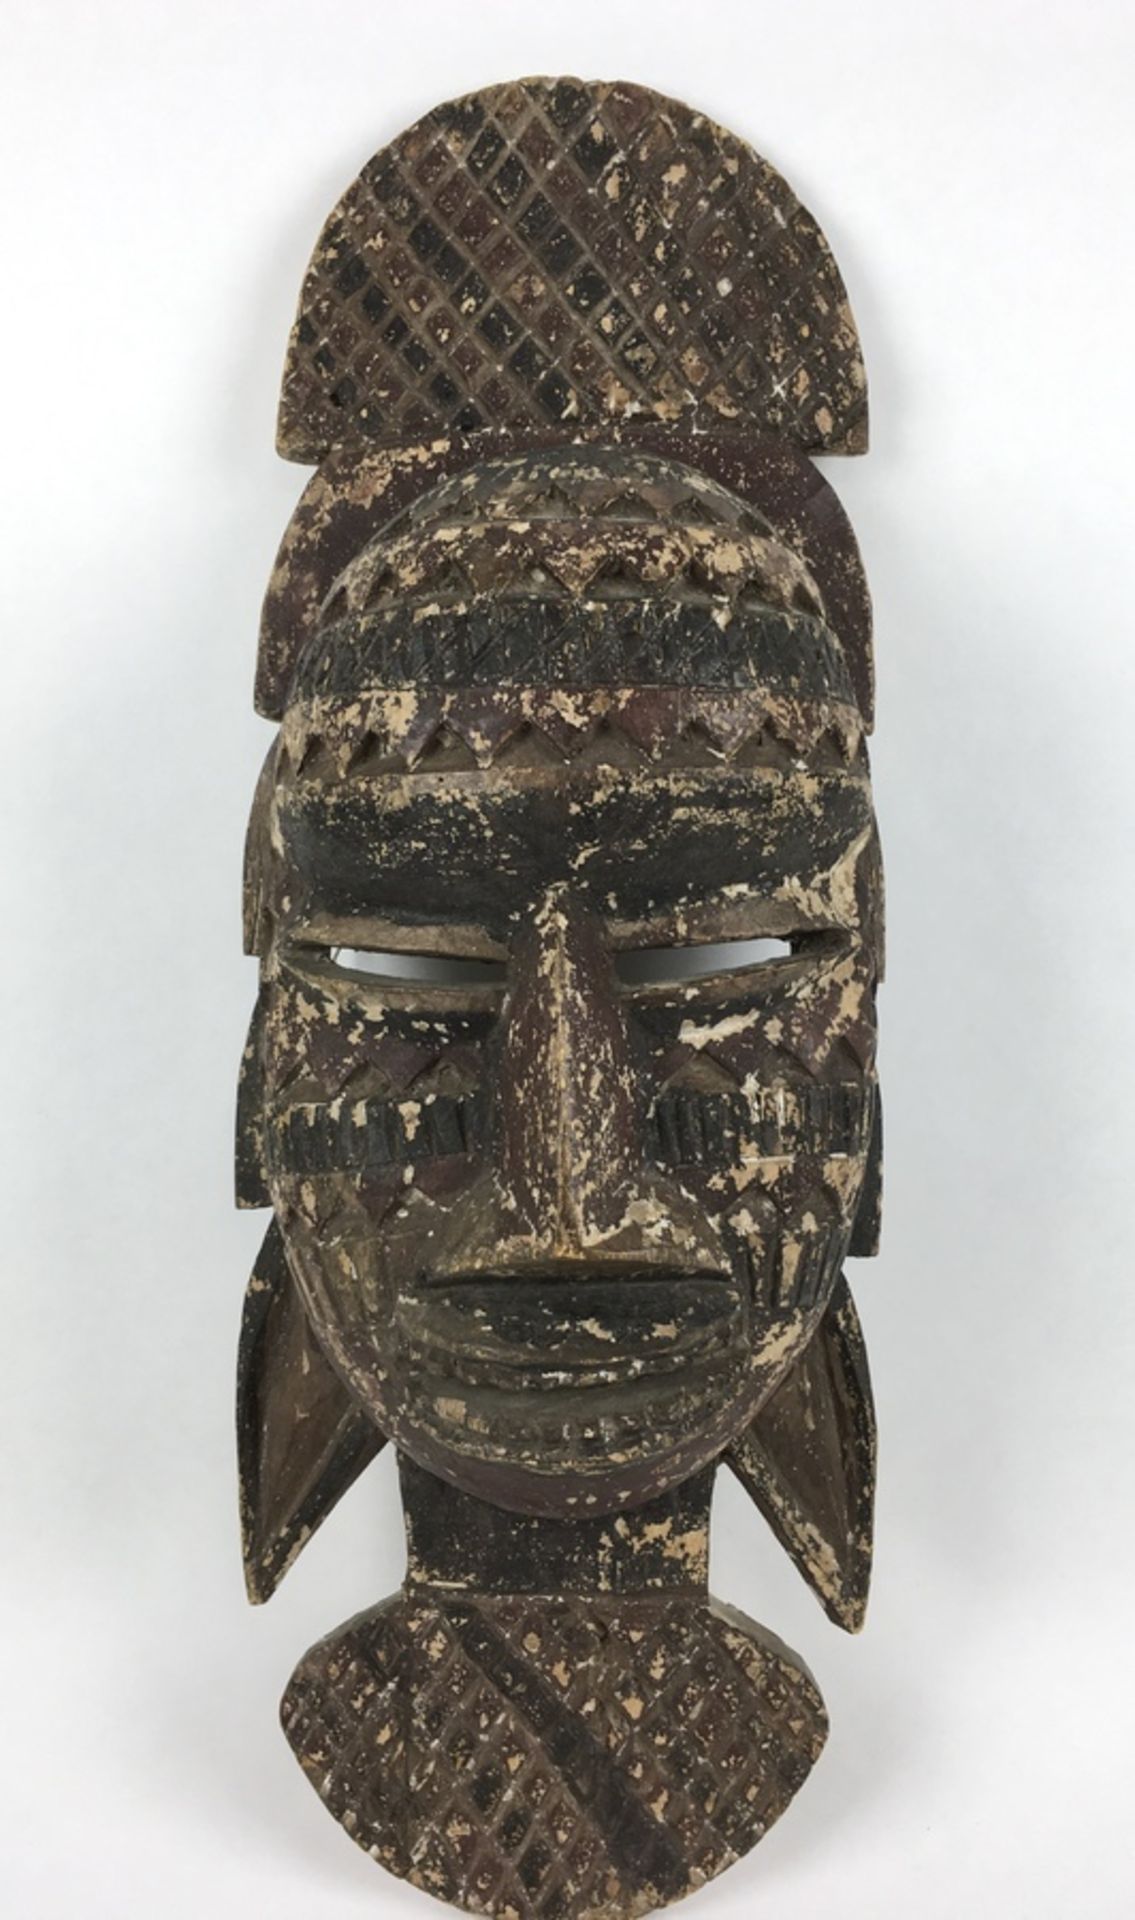 (Etnografica) Hout, decoratief masker, 2e helft 20e eeuw, AfrikaHout, decoratief masker, 2e hel